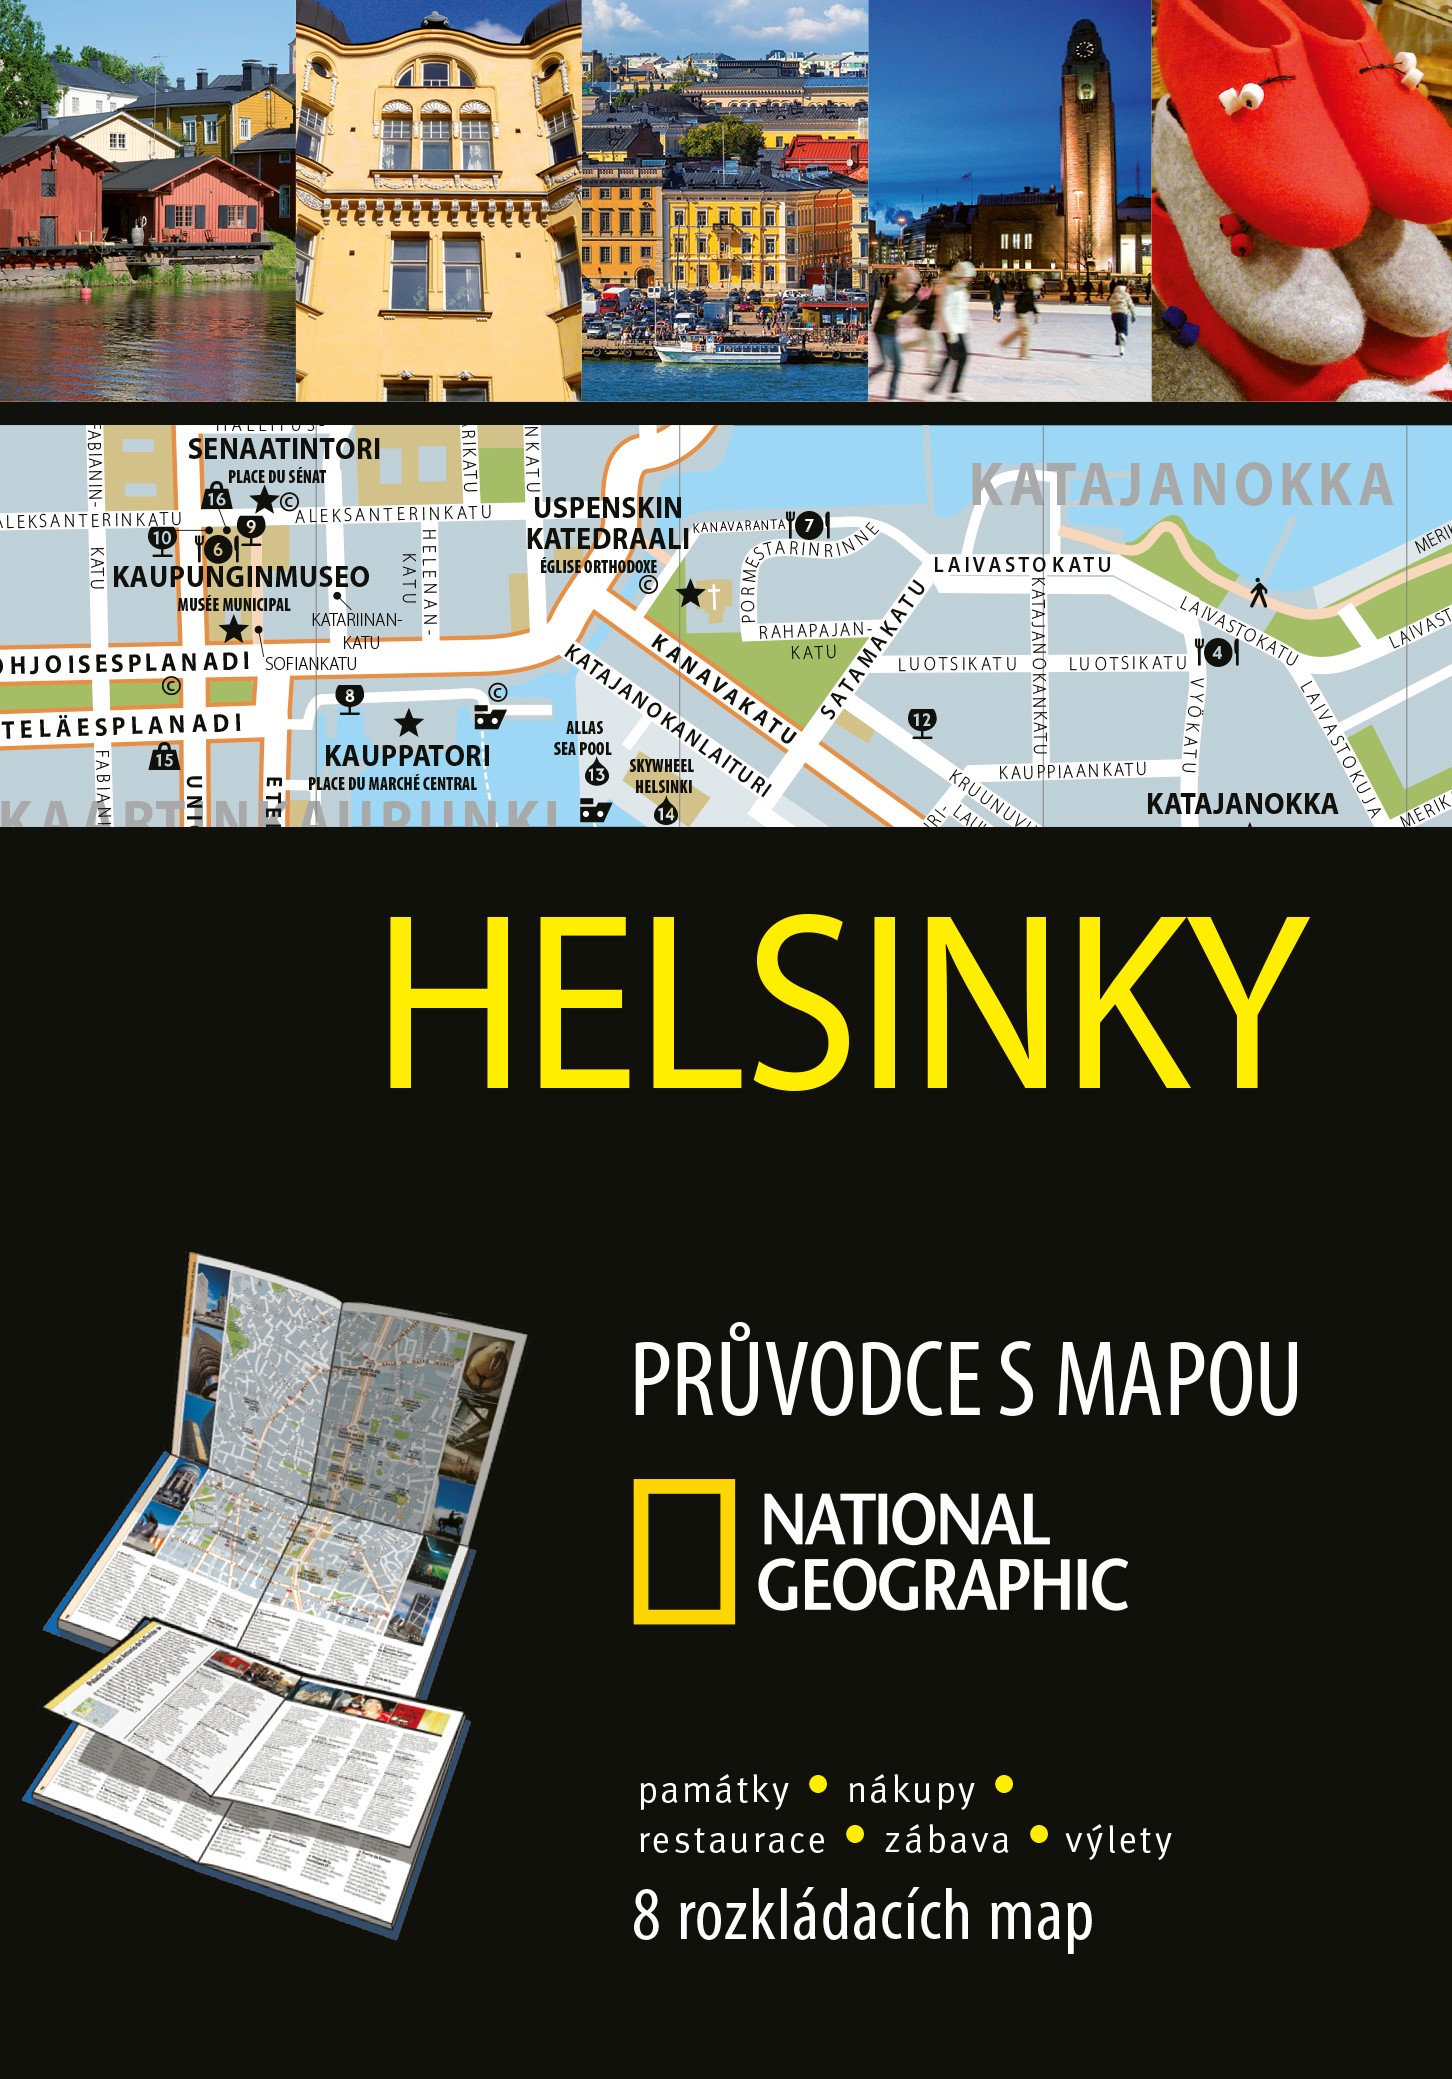 Helsinky